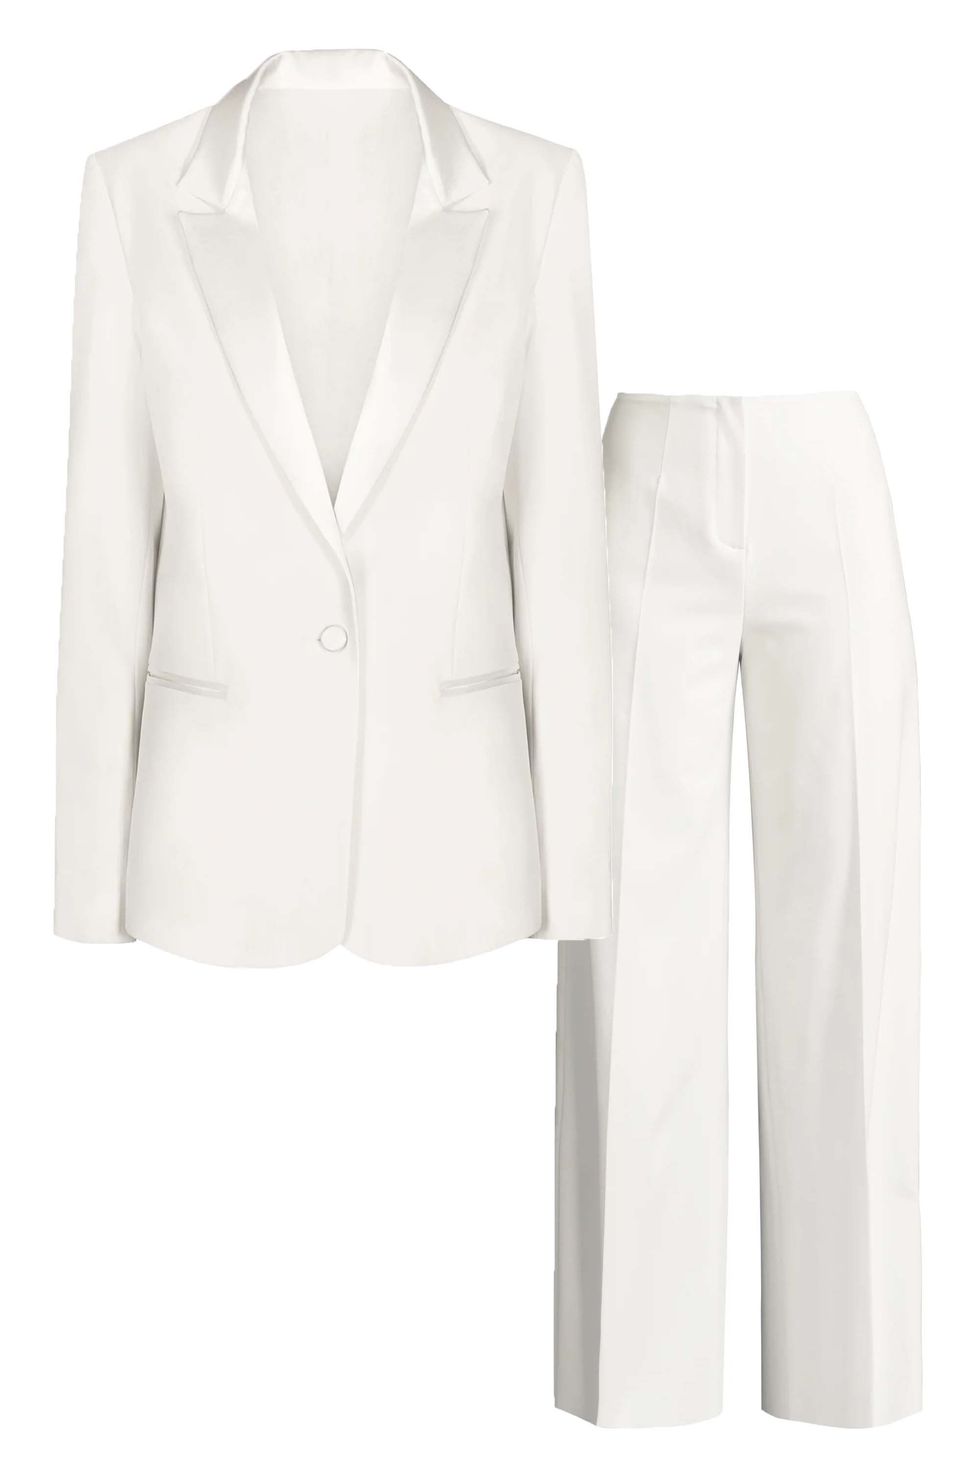 White Blazer Trouser Suit for Women, White Pantsuit for Women, 3-piece  Pantsuit for Women, Bridal Pantsuit Civil Wedding, Summer Blazer Suit 